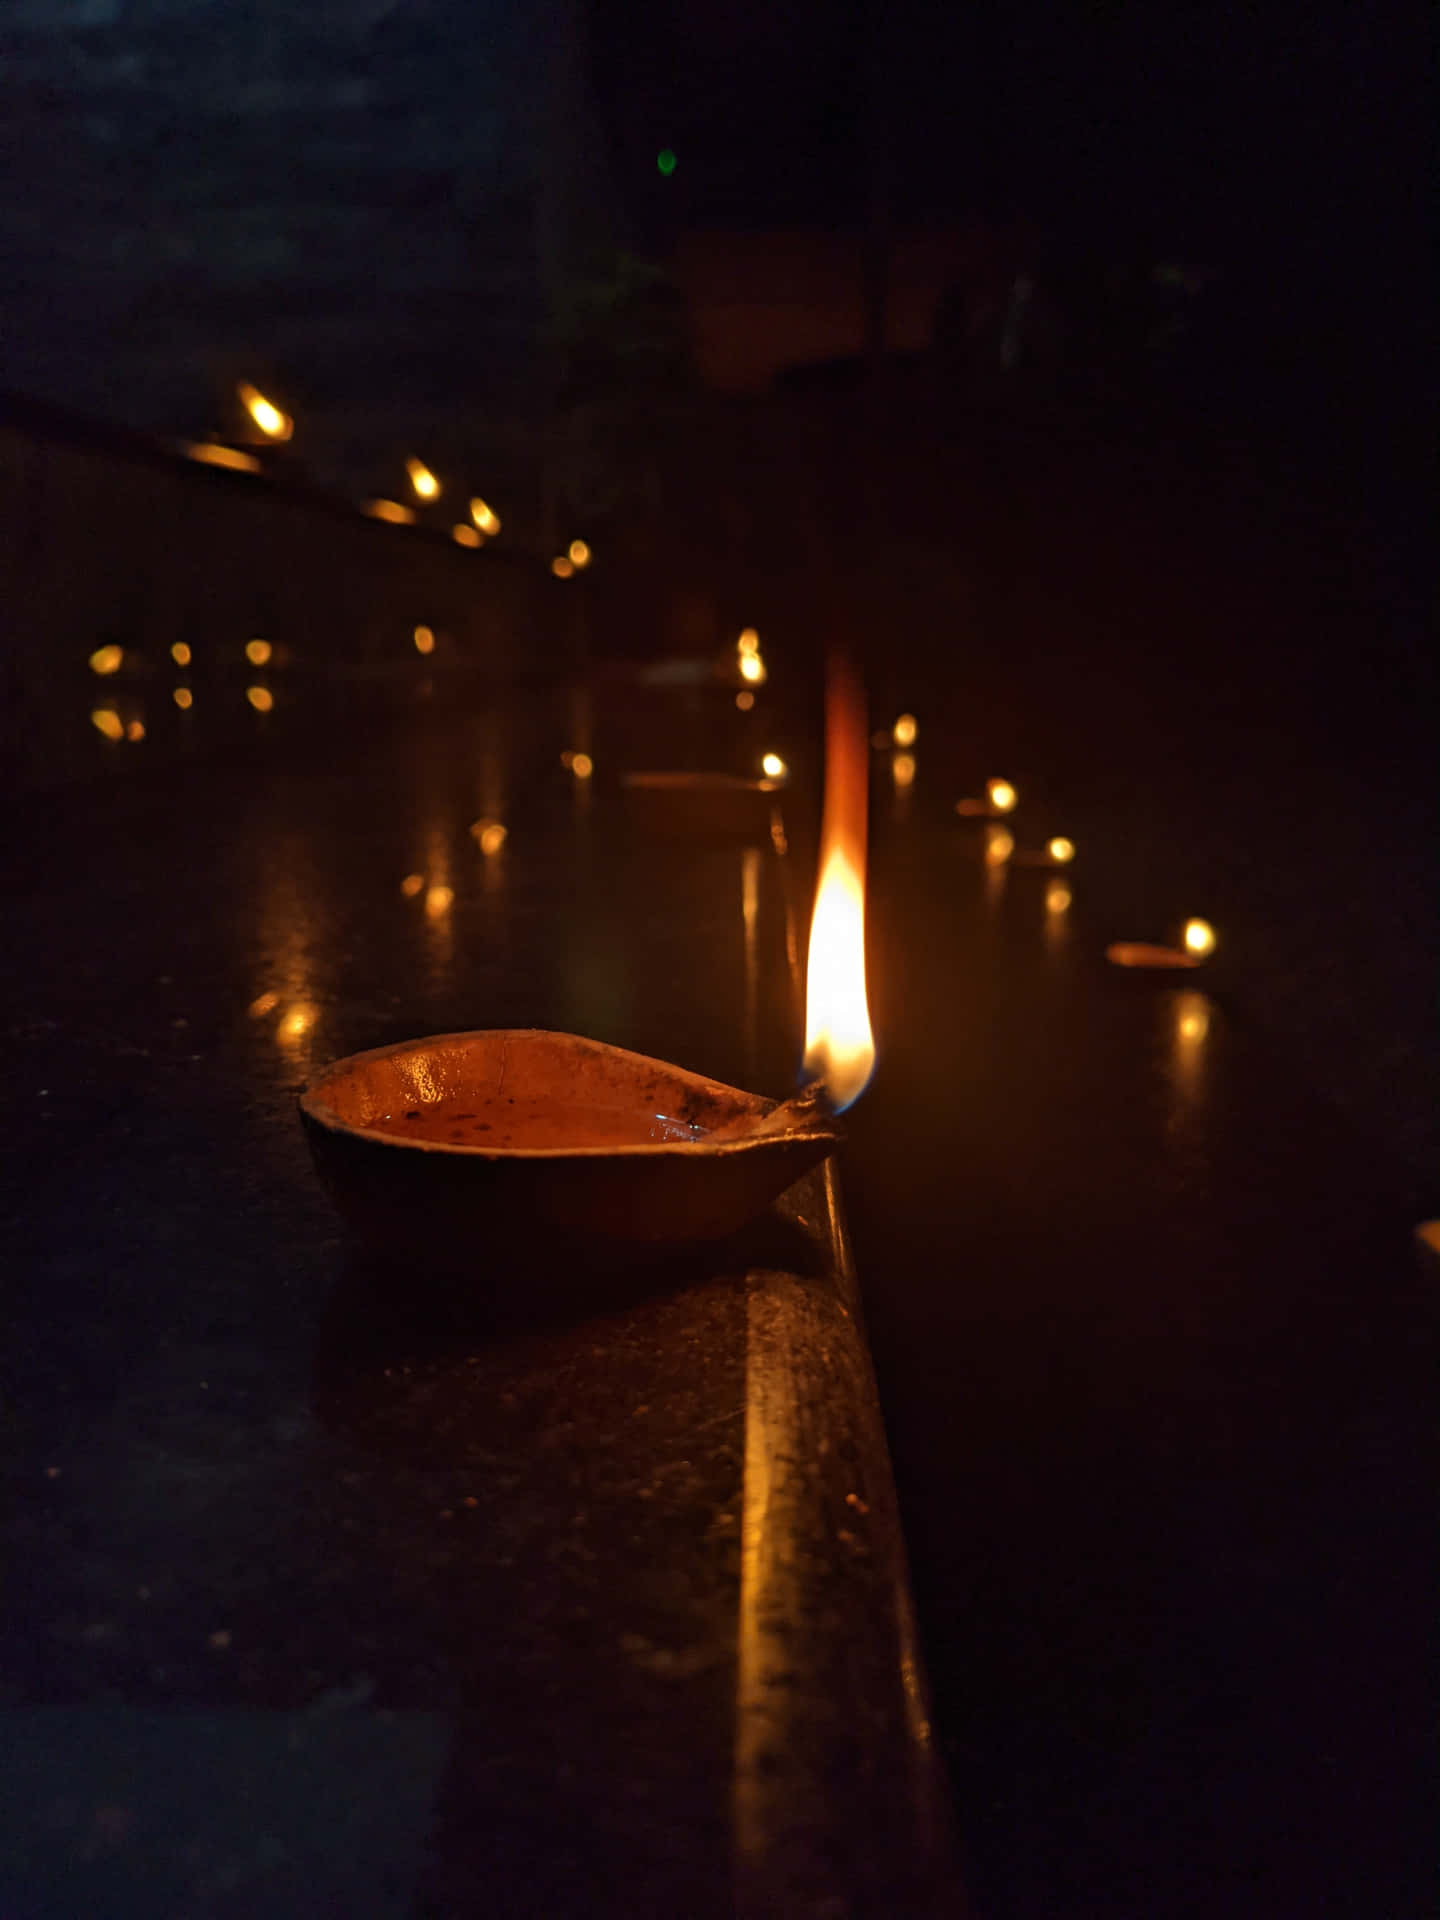 Exquisite Celebration Of Diwali